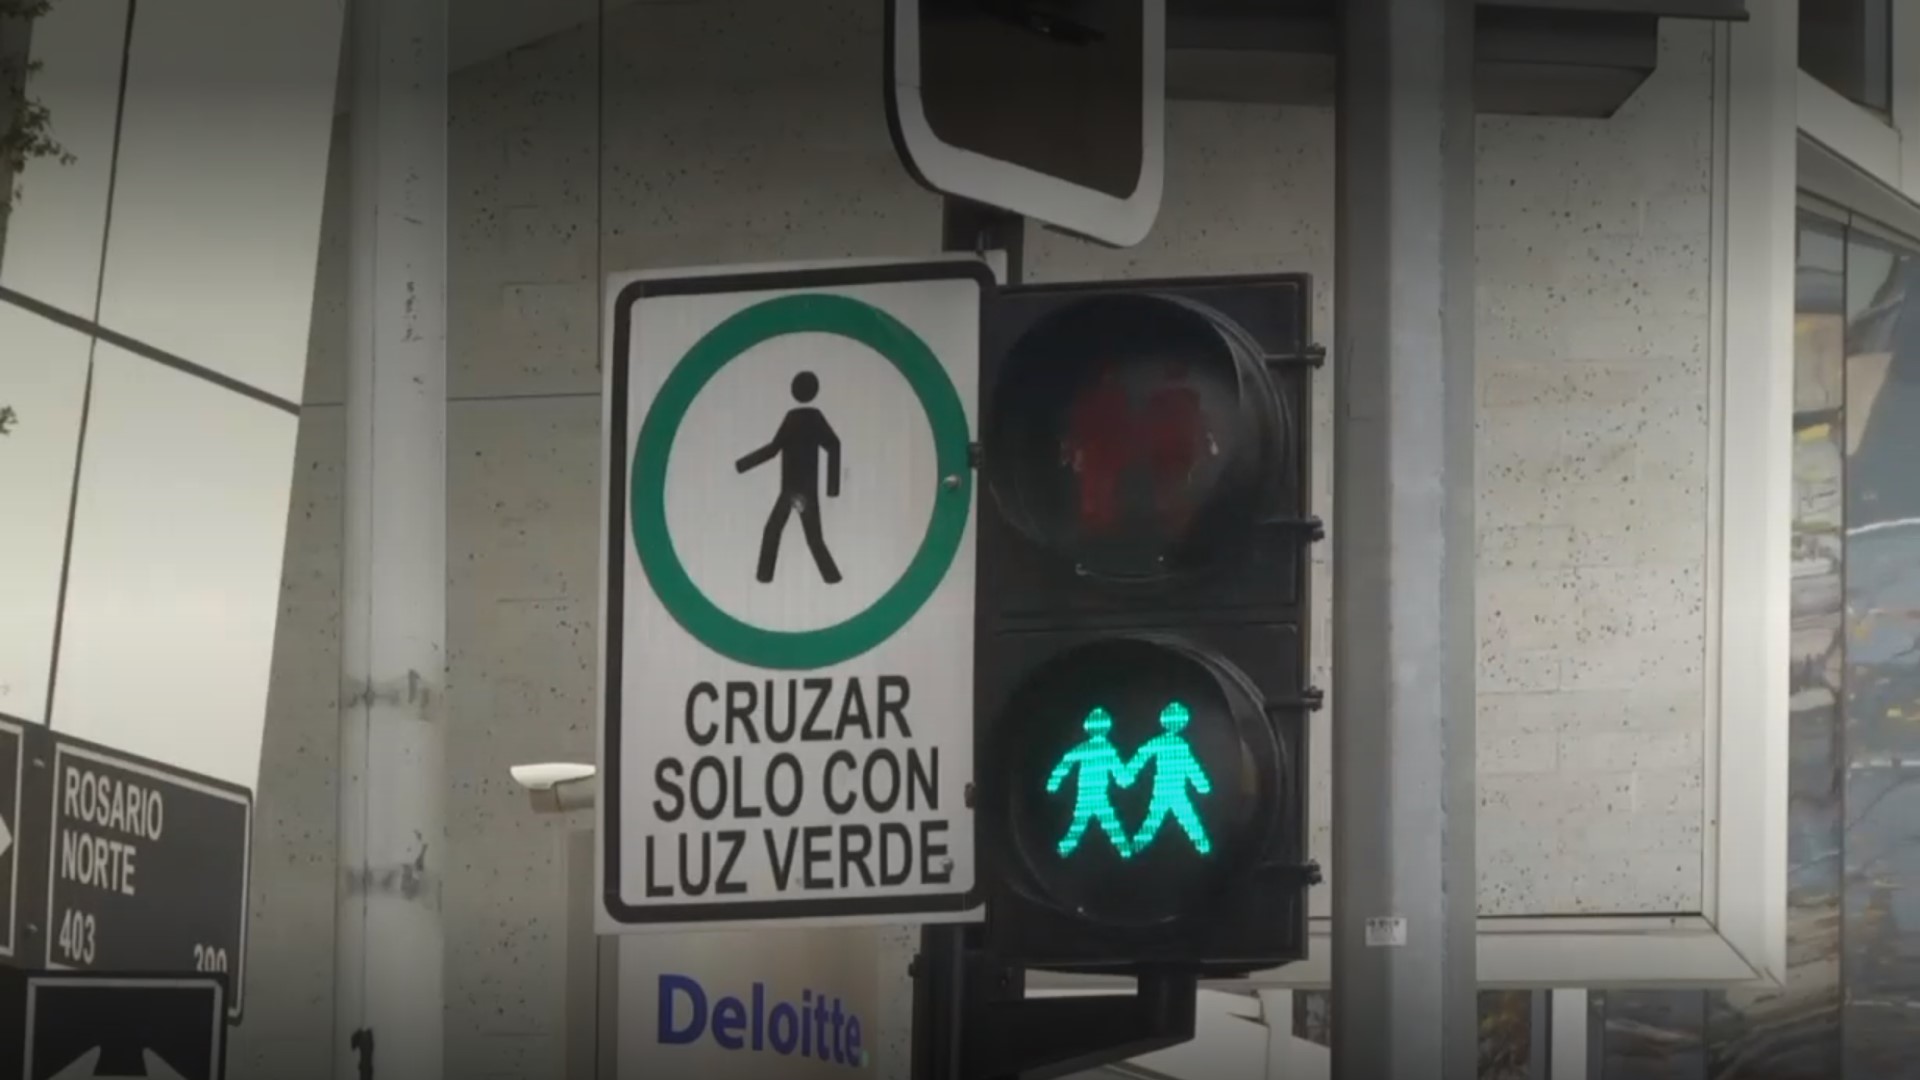 Semáforo peatonal simple con luz verde para cruzar y luz roja para esperar